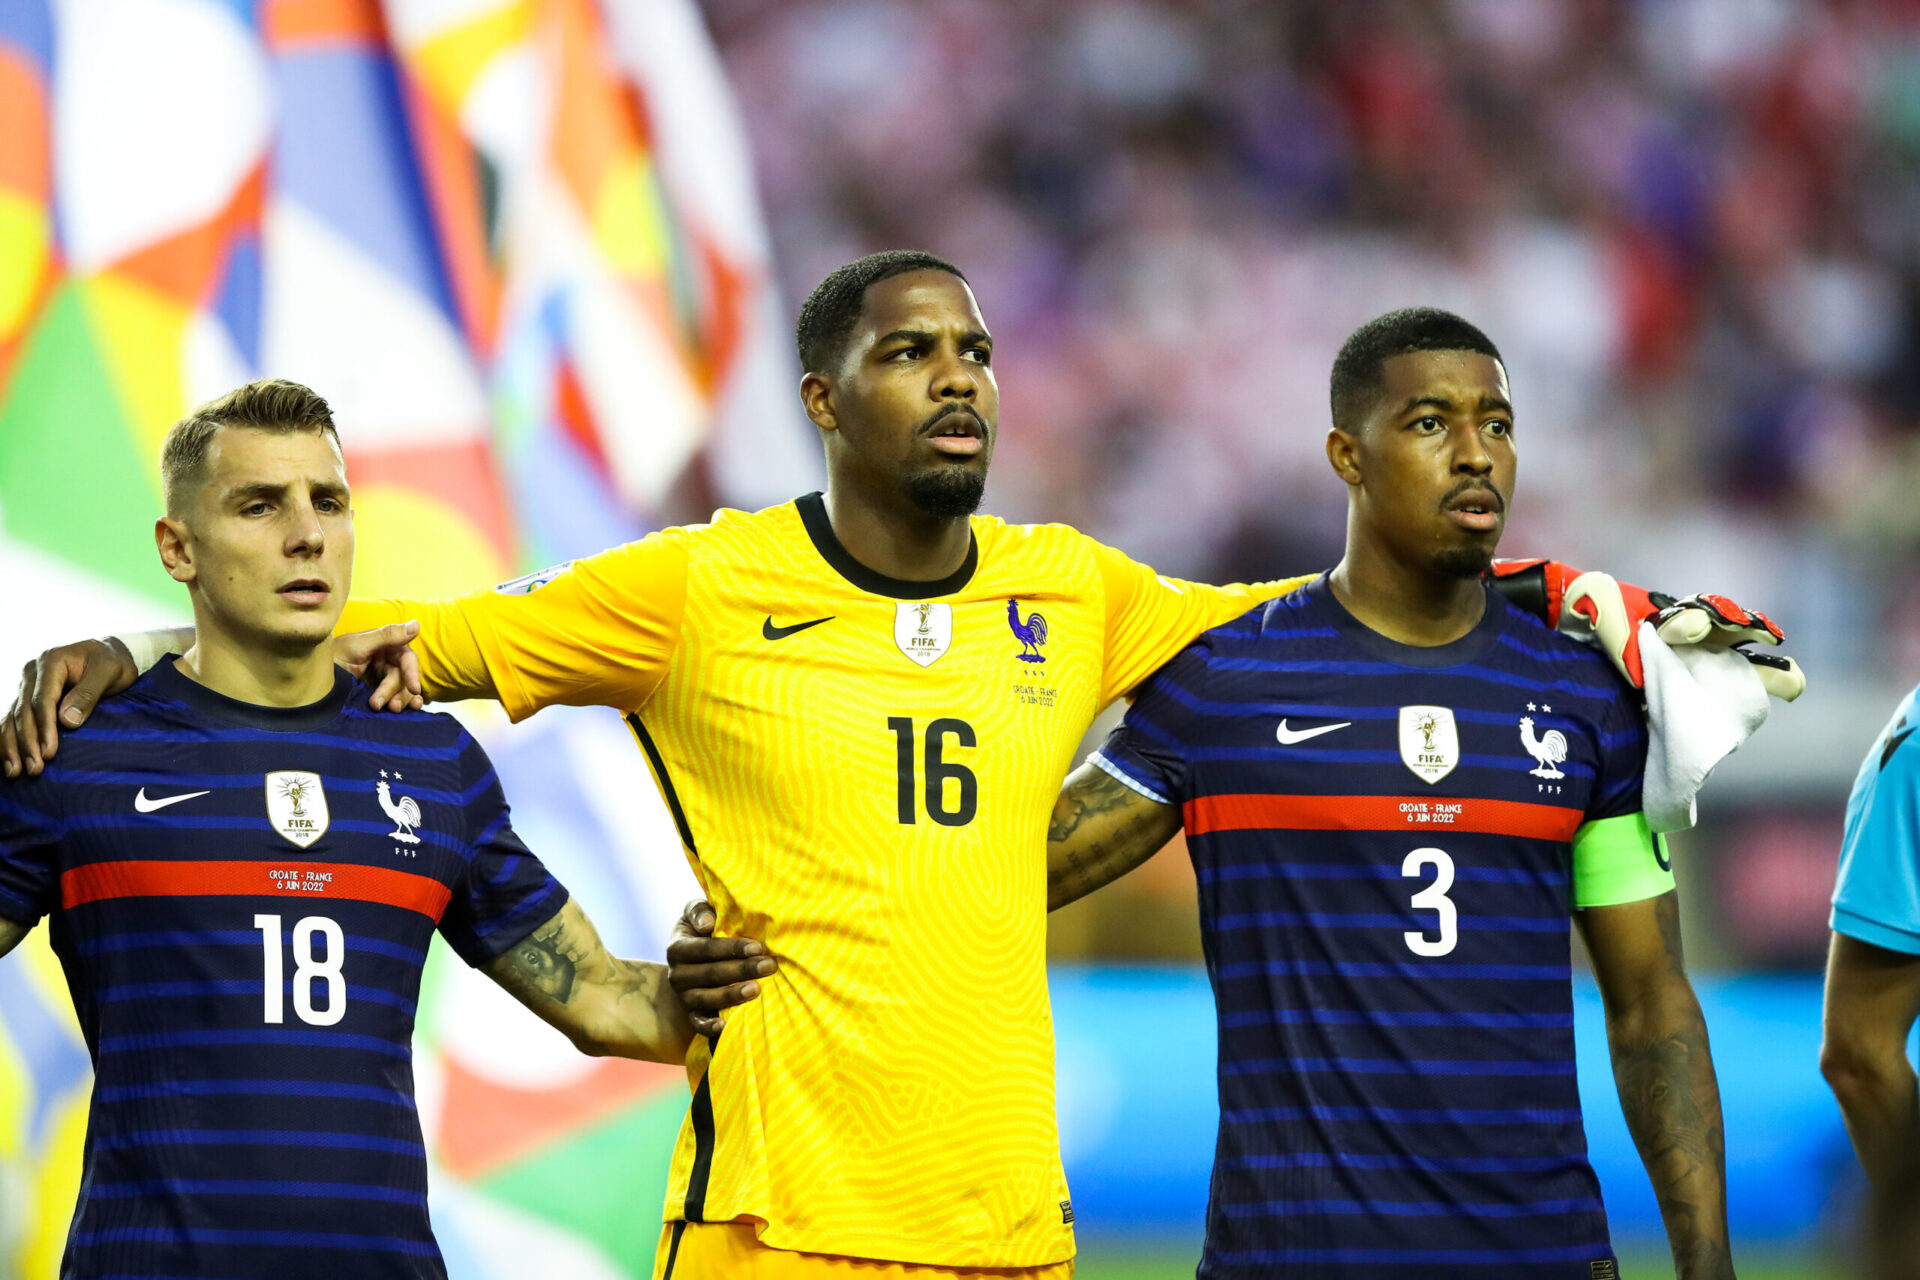 Thêm một cầu thủ không thể ra sân của tuyển Pháp tại World Cup 2022